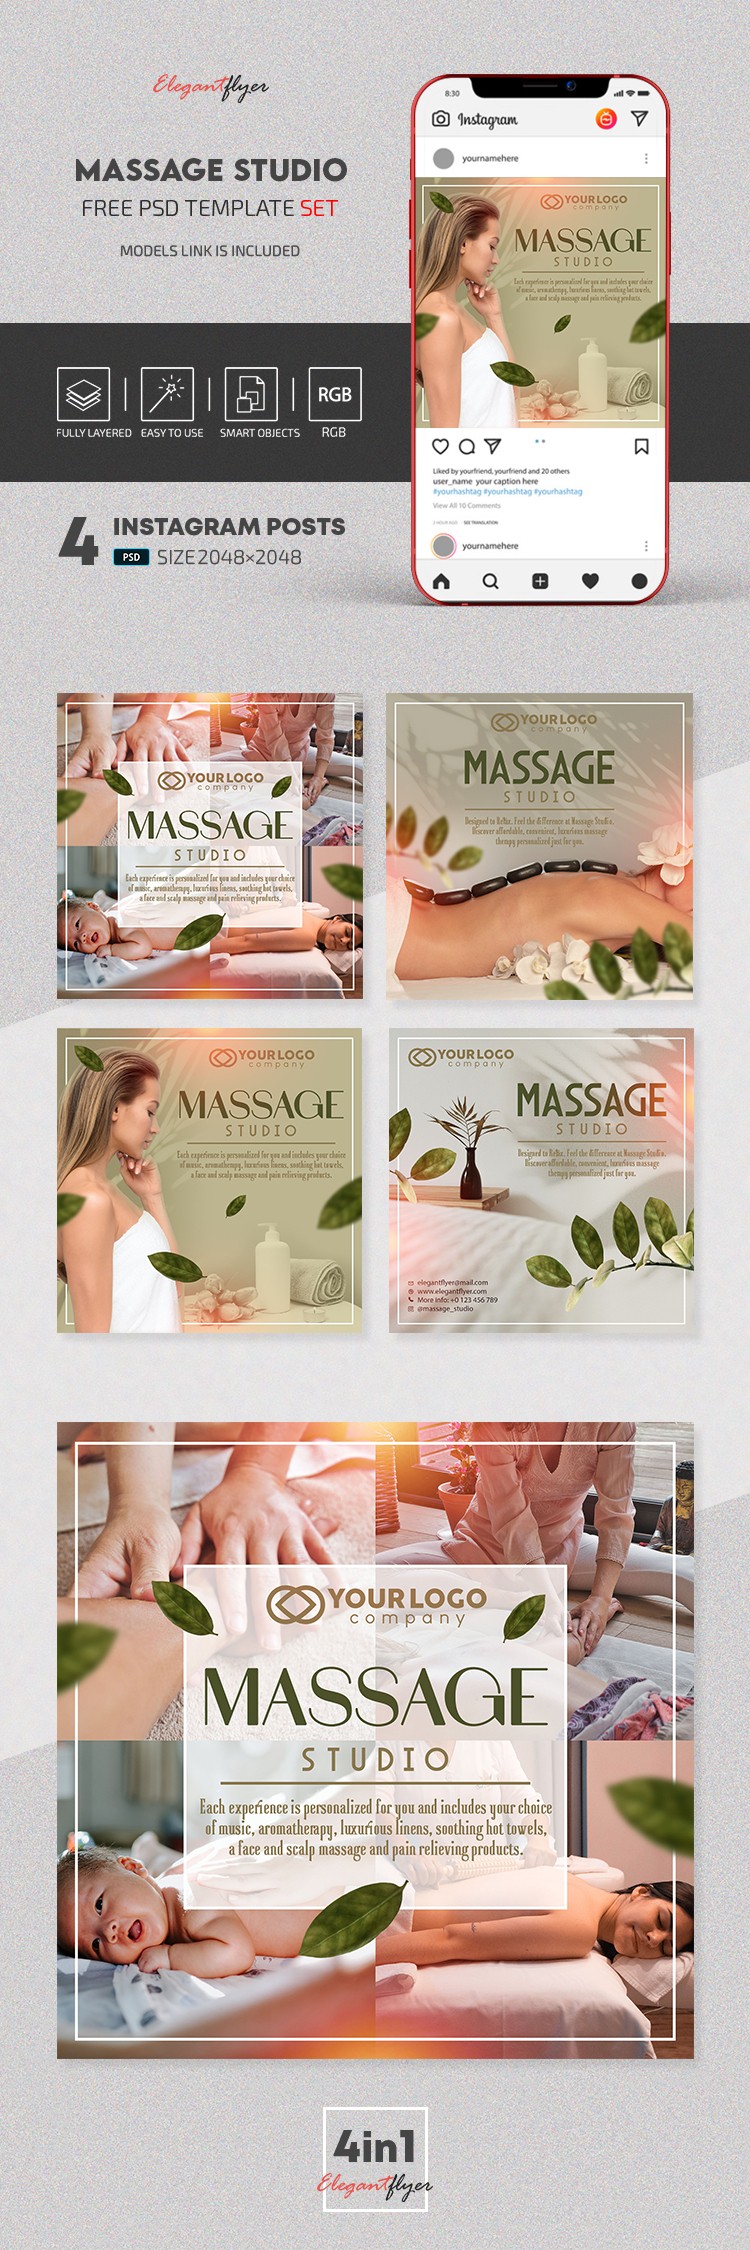 Studio de massage Instagram by ElegantFlyer